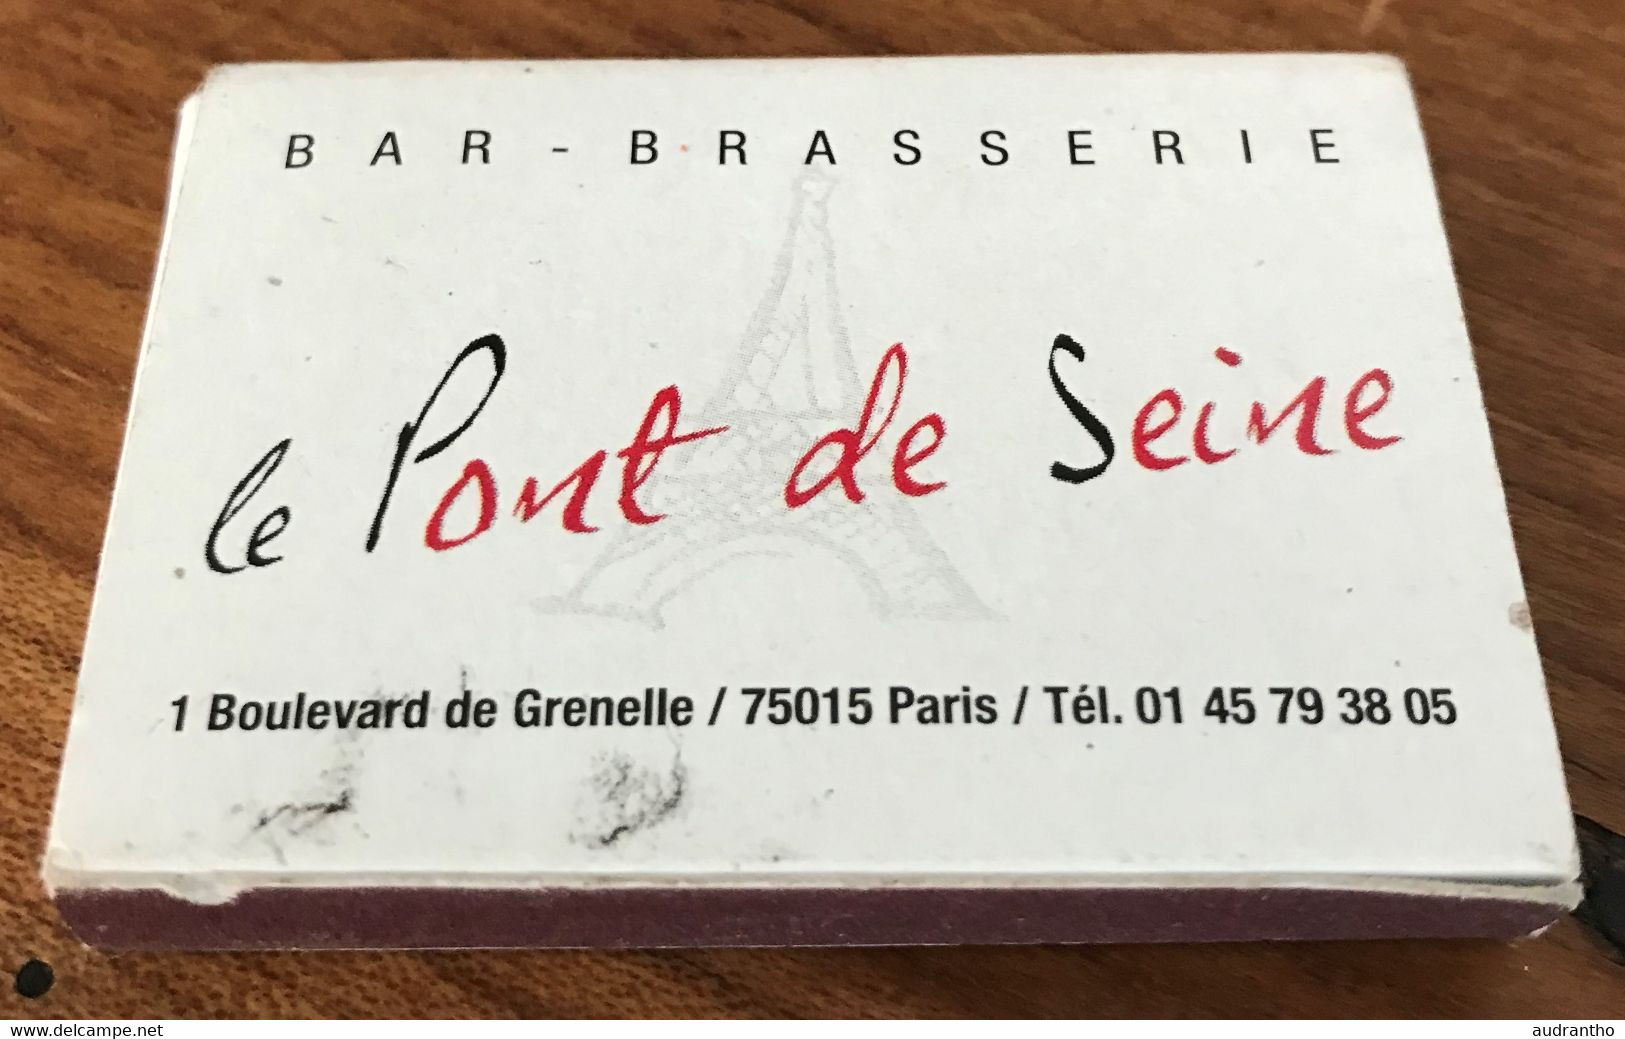 Boîte D'allumettes Le Pont De Seine Bar Brasserie 1 Boulevard De Grenelle Paris - Boites D'allumettes